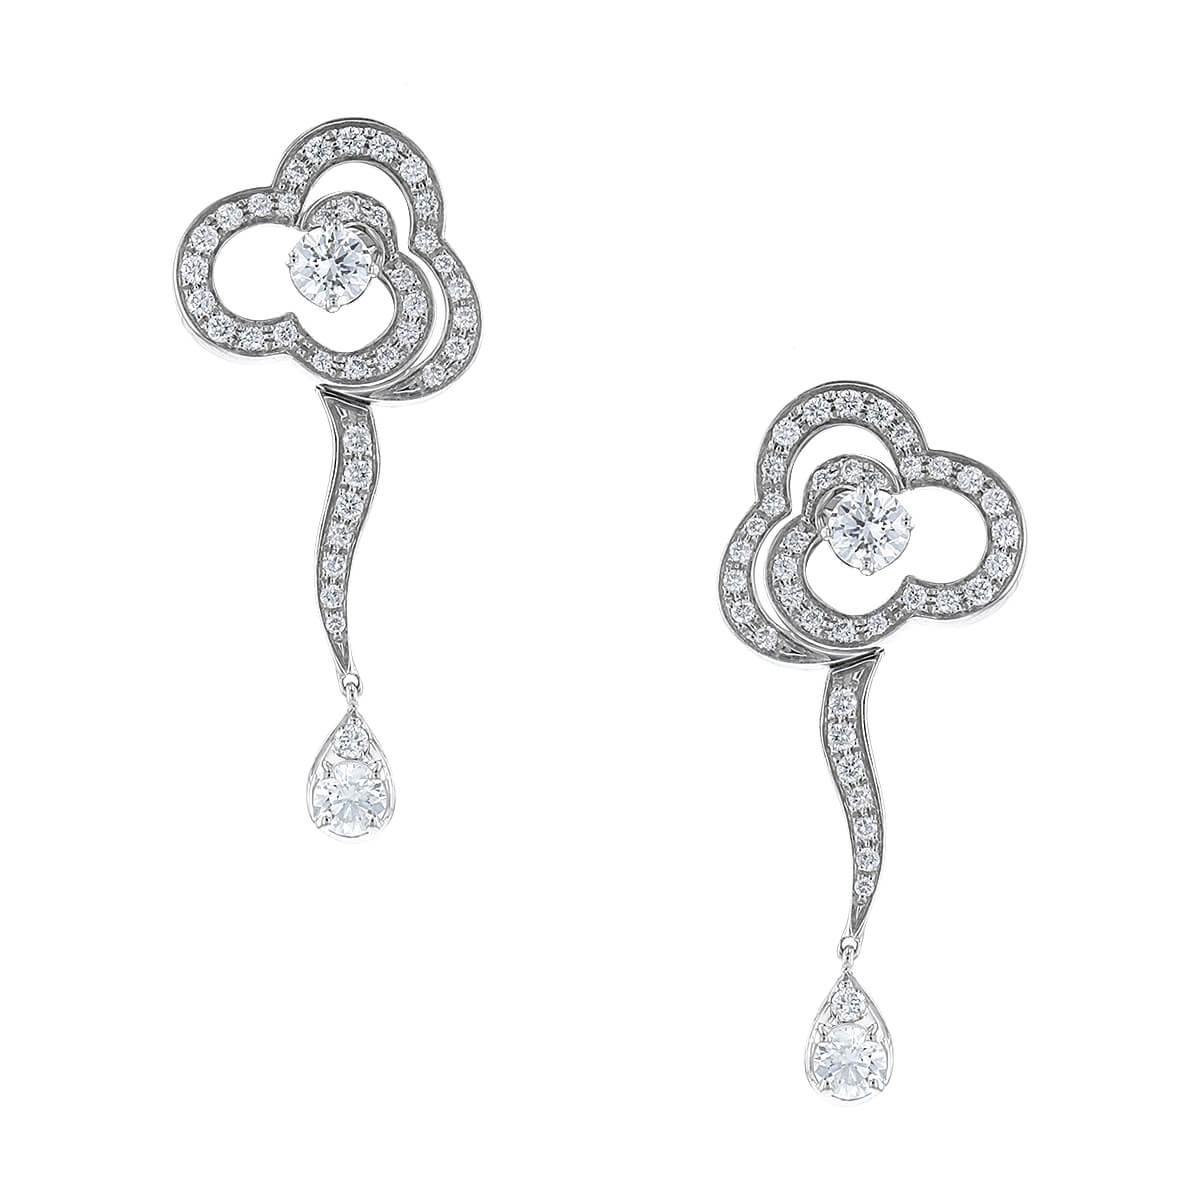 Chanel Fil de Camelia Earrings  Chanel jewelry earrings, White